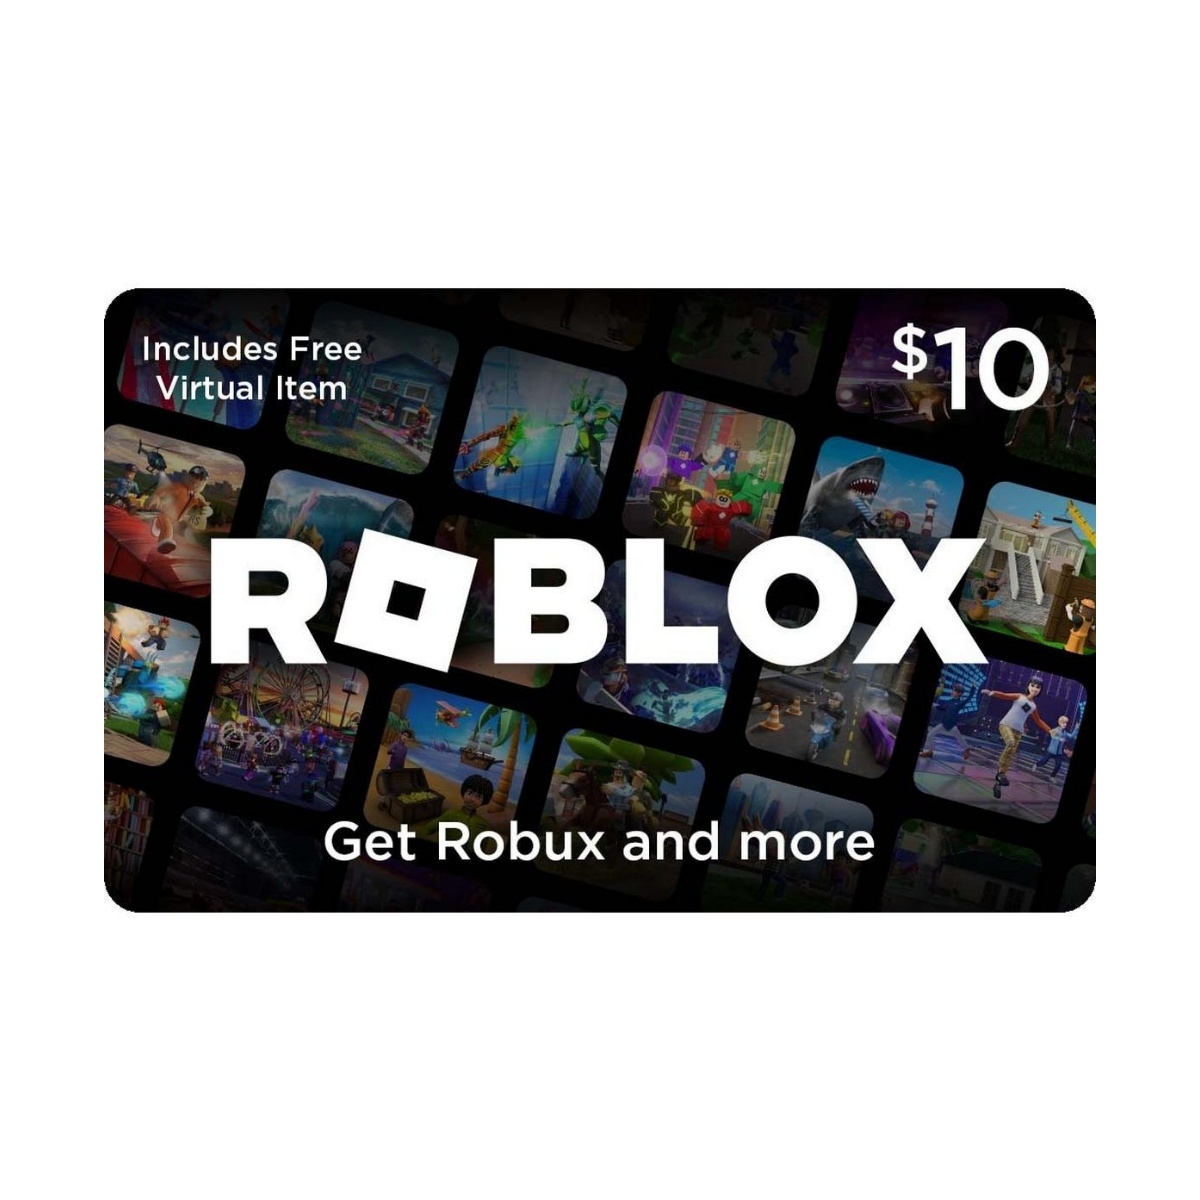 CREAR una cuenta en Roblox gratis · [Registrarse en Roblox]